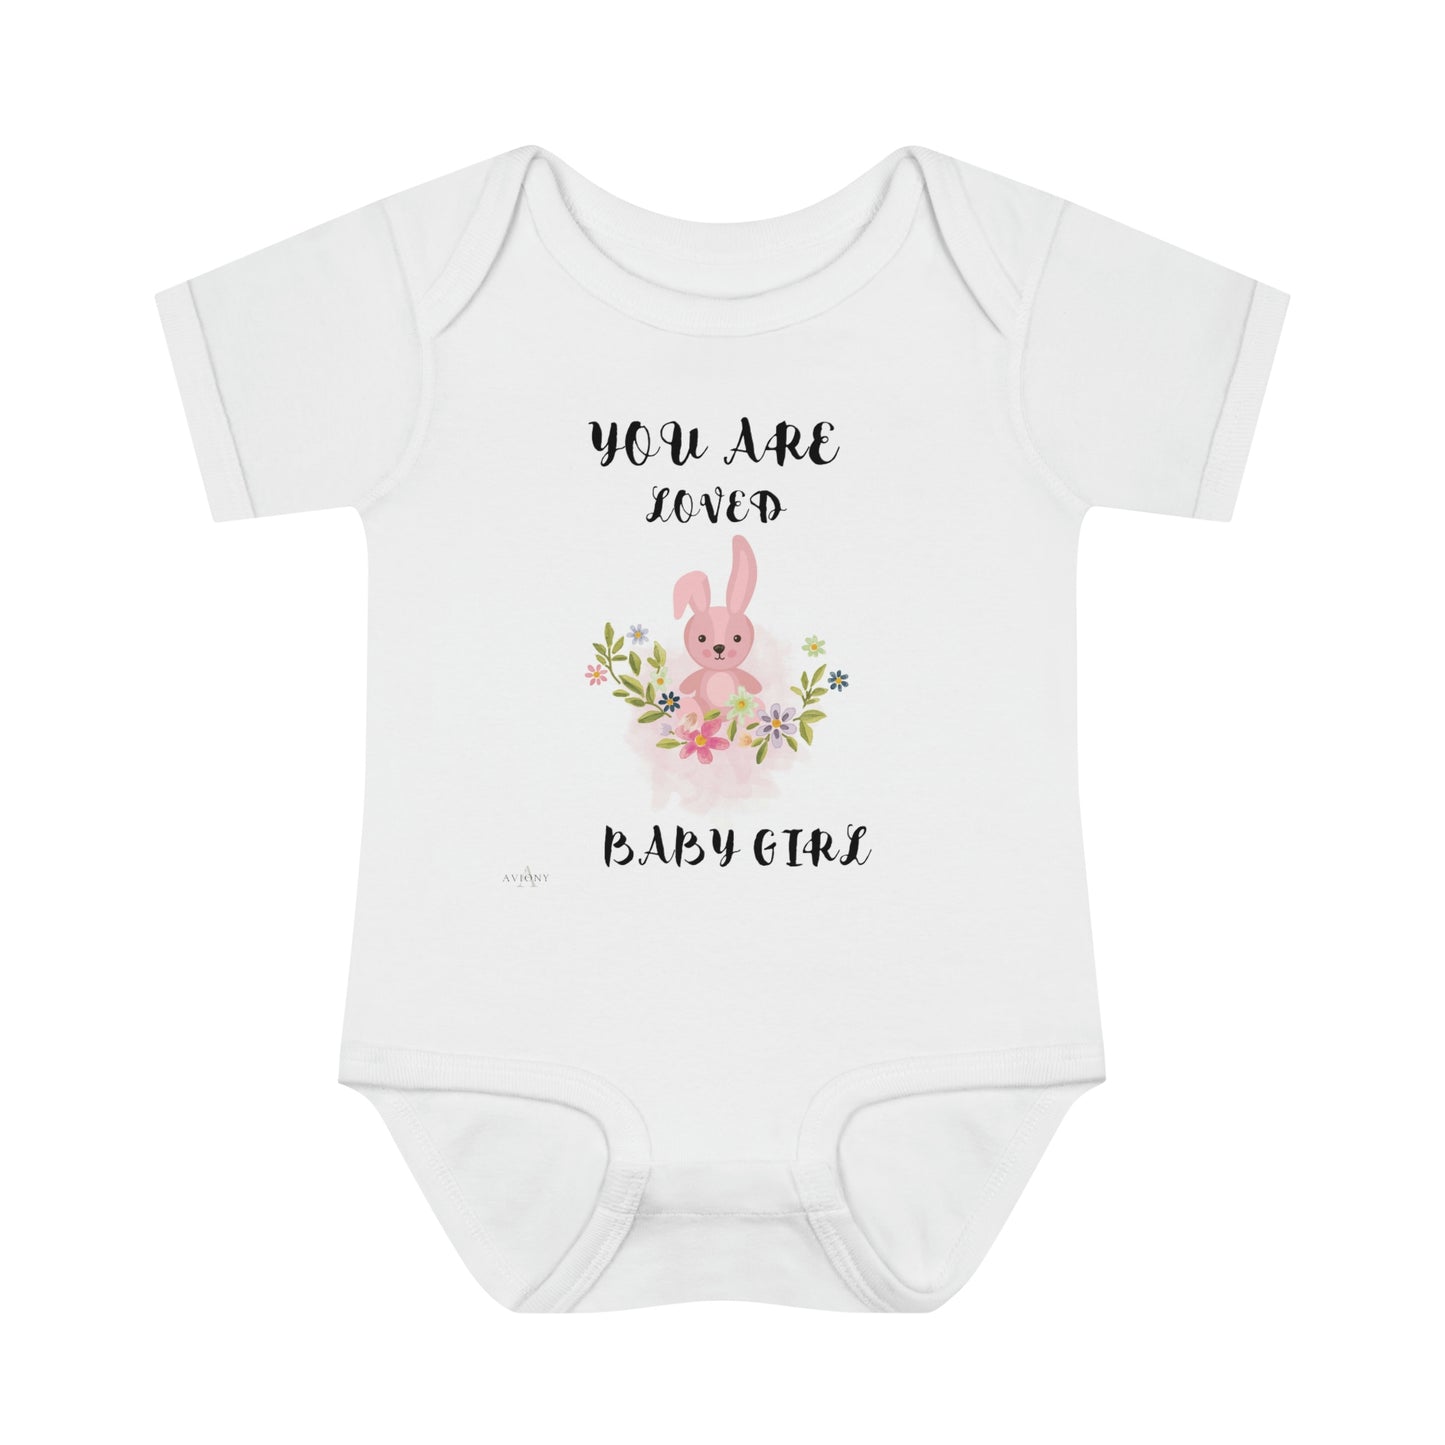 AVIONY Infant Baby Rib Bodysuit